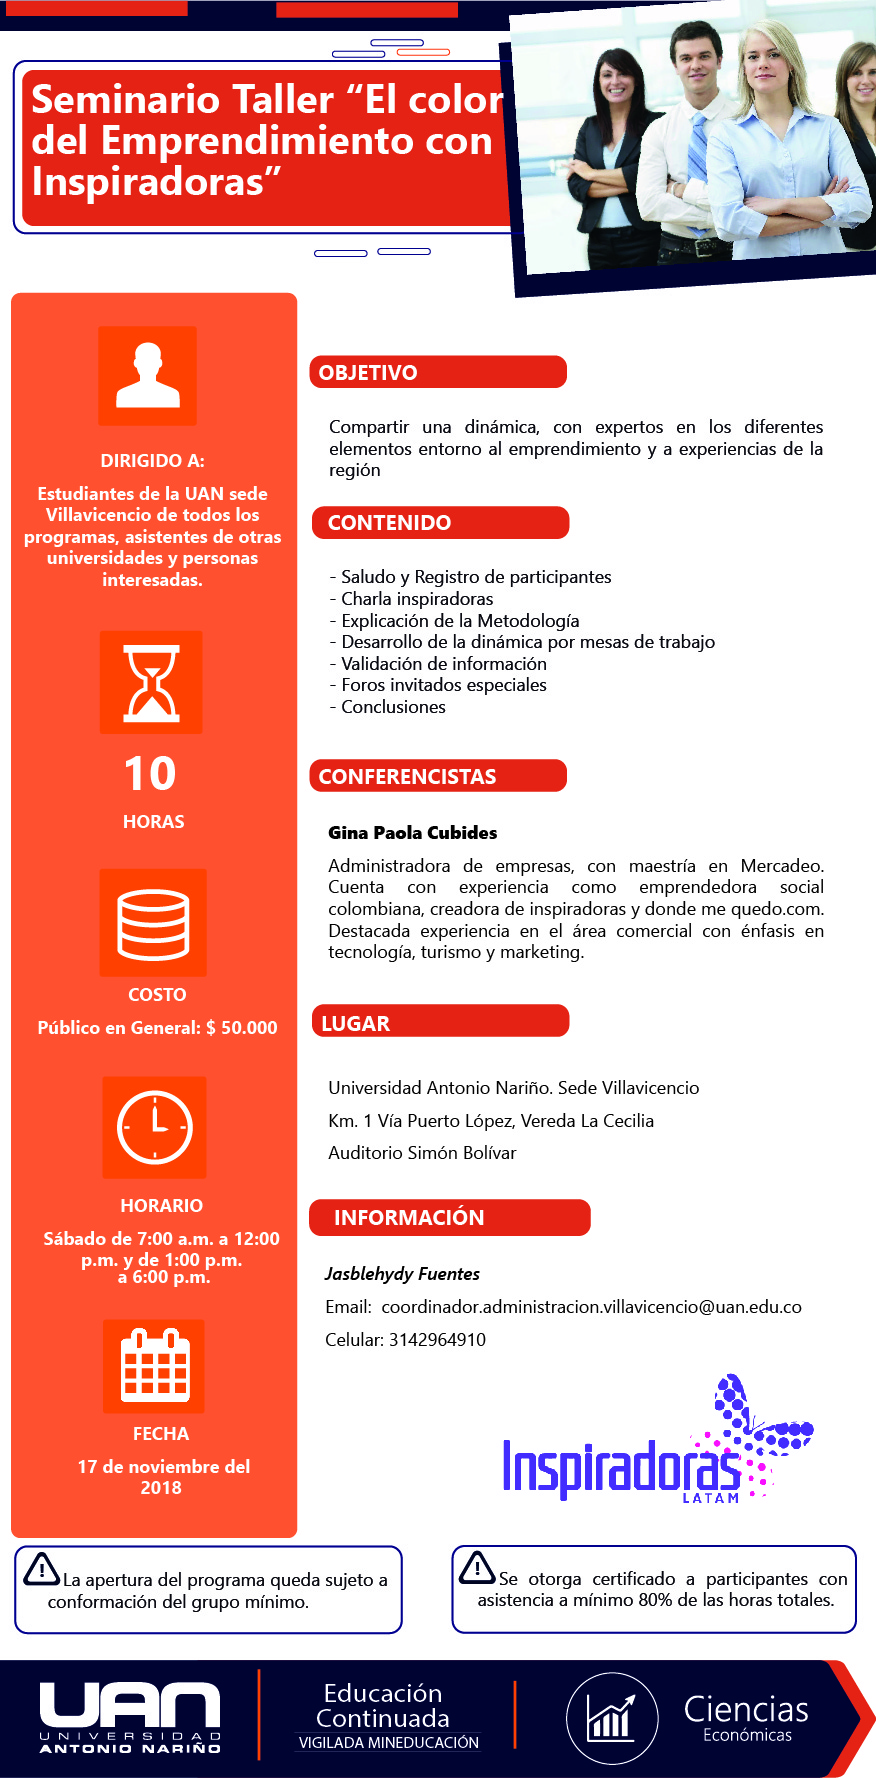 SeminarioTallerColorEmprendimientoconInspiradoras Villavicencio2018 Mailing